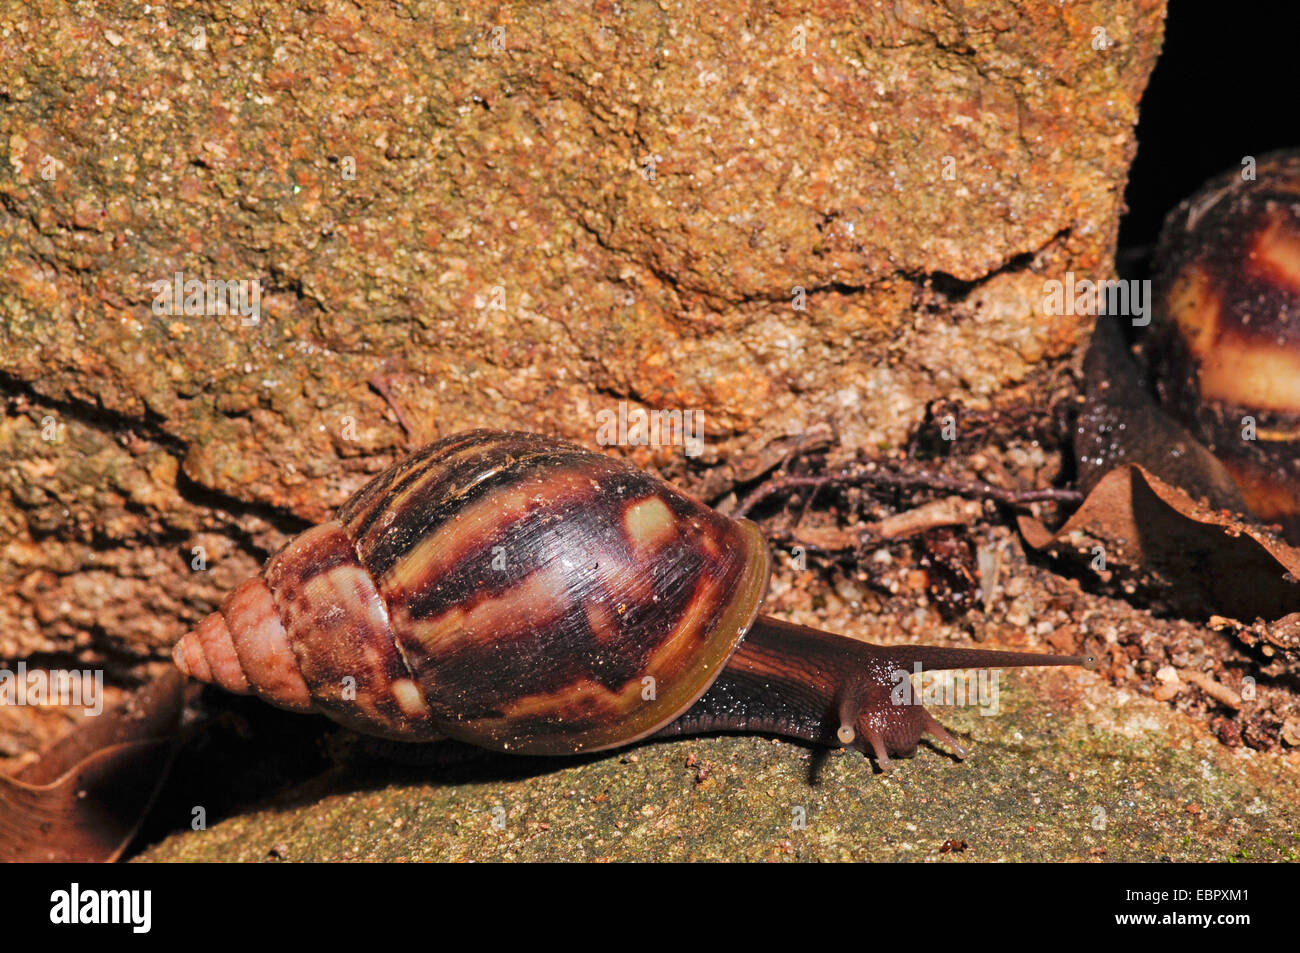 Escargot tropical auf einem Stein, Sri Lanka Banque D'Images